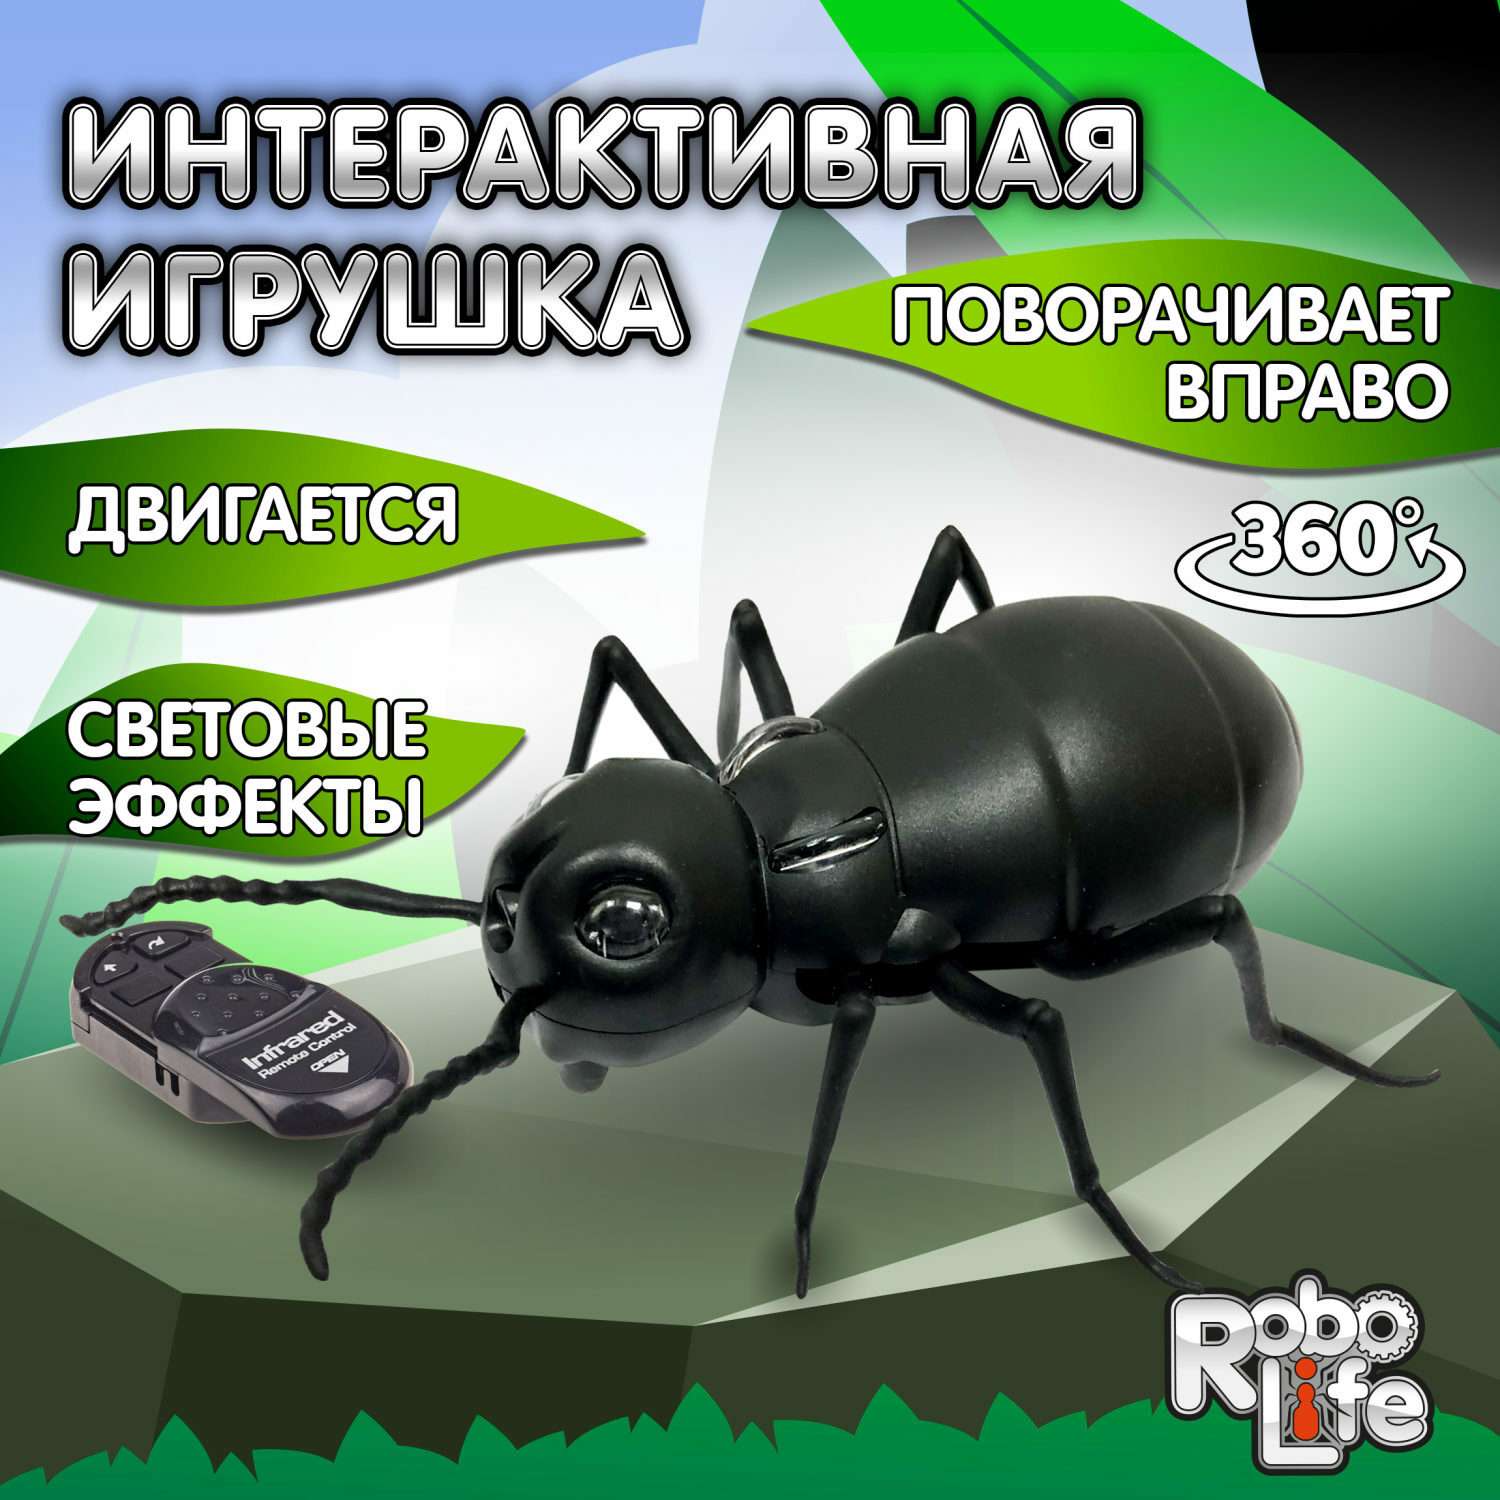 Интерактивная игрушка Robo Life Робо-муравей на ИК управлении со световыми эффектами - фото 1